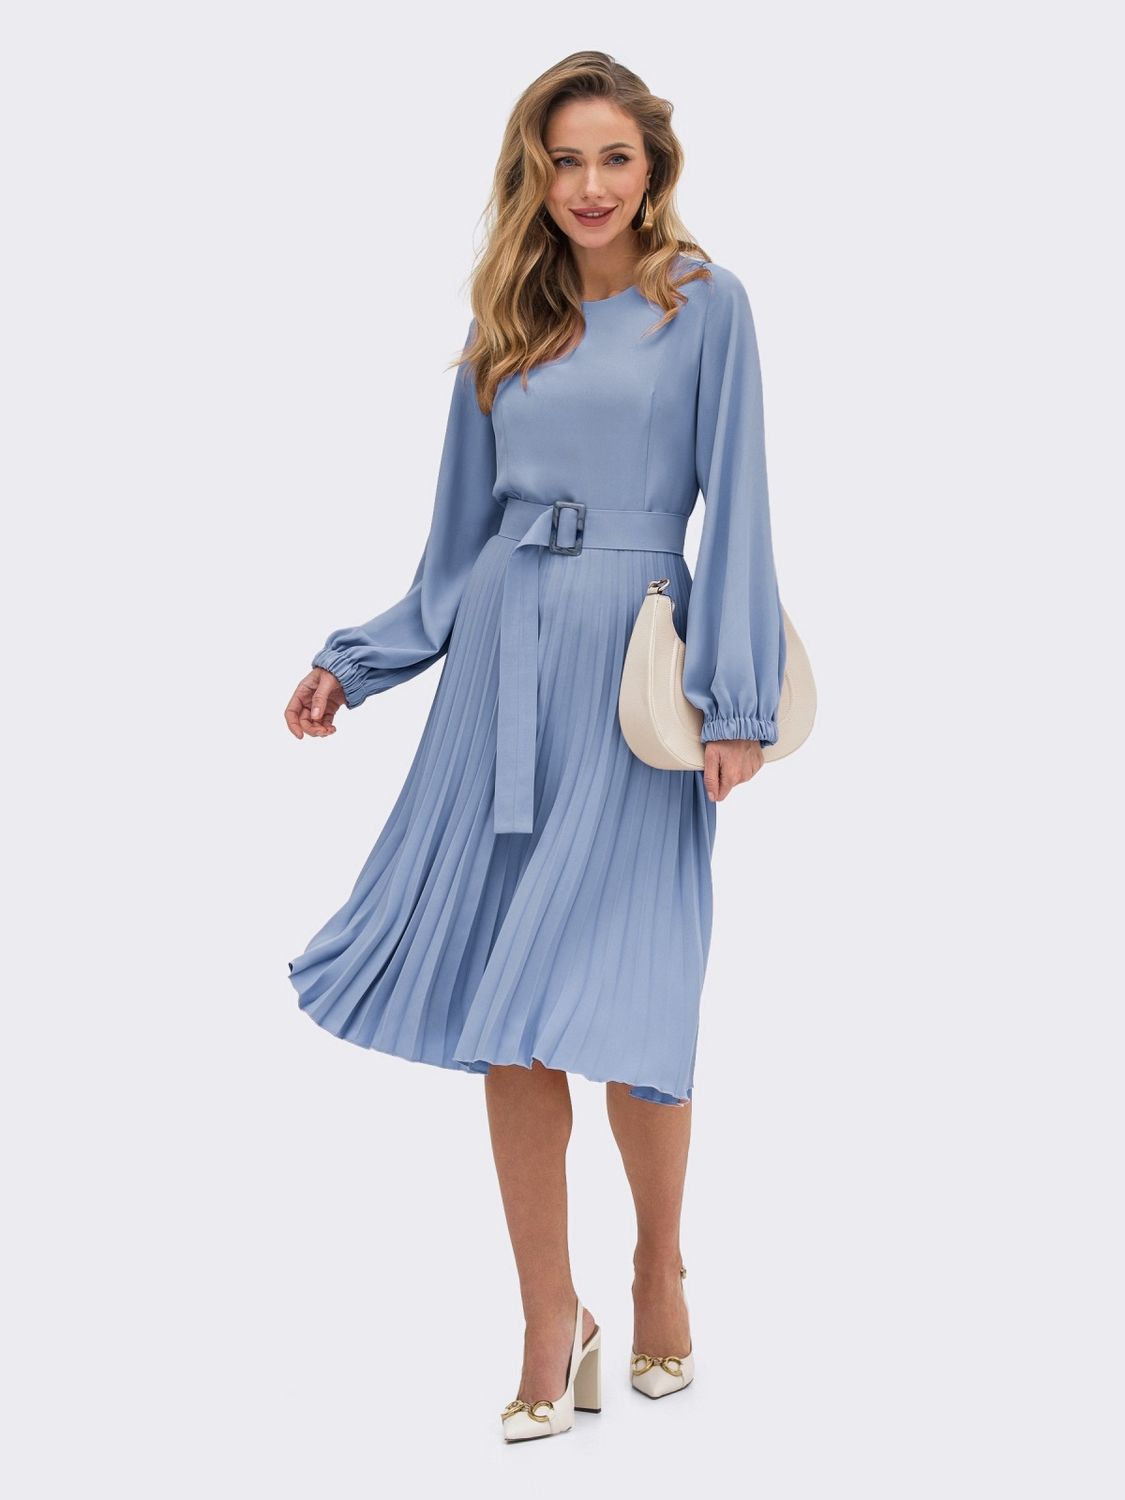 Сукня-міді зі спідницею-плісе блакитного кольору - фото